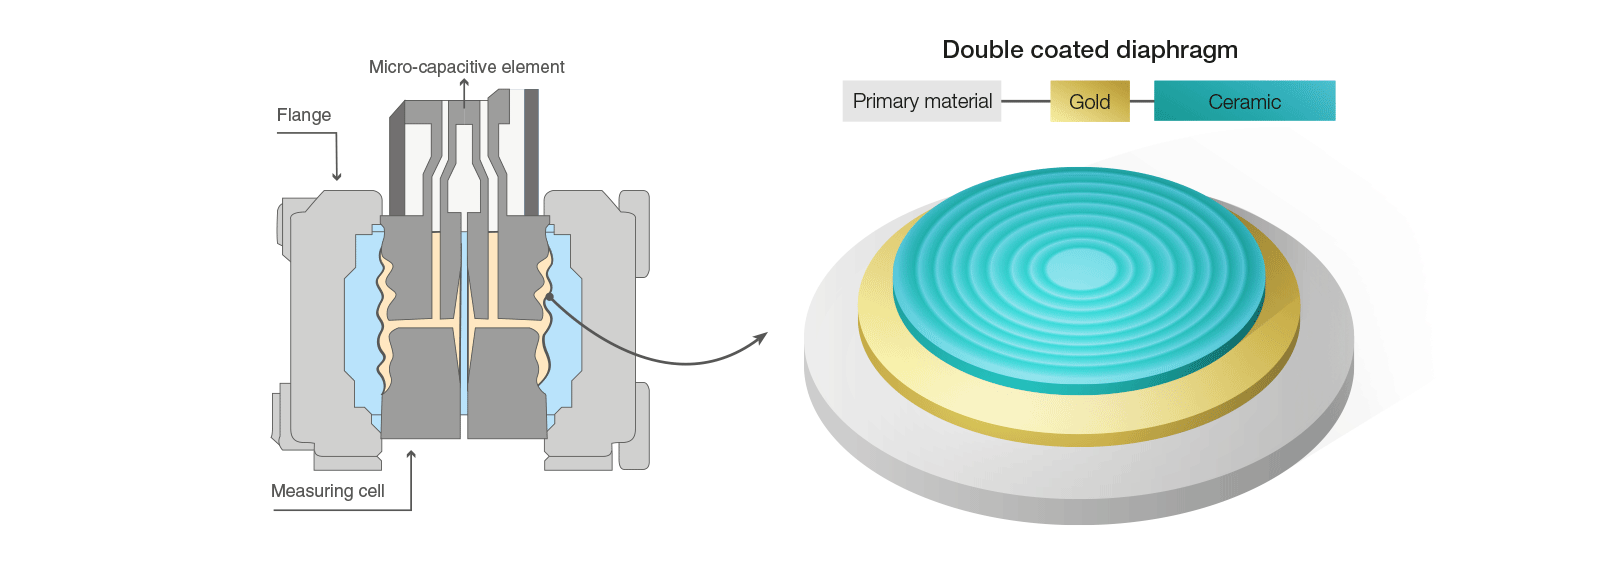 Diagrama do sensor de pressão de membrana para hidrogénio